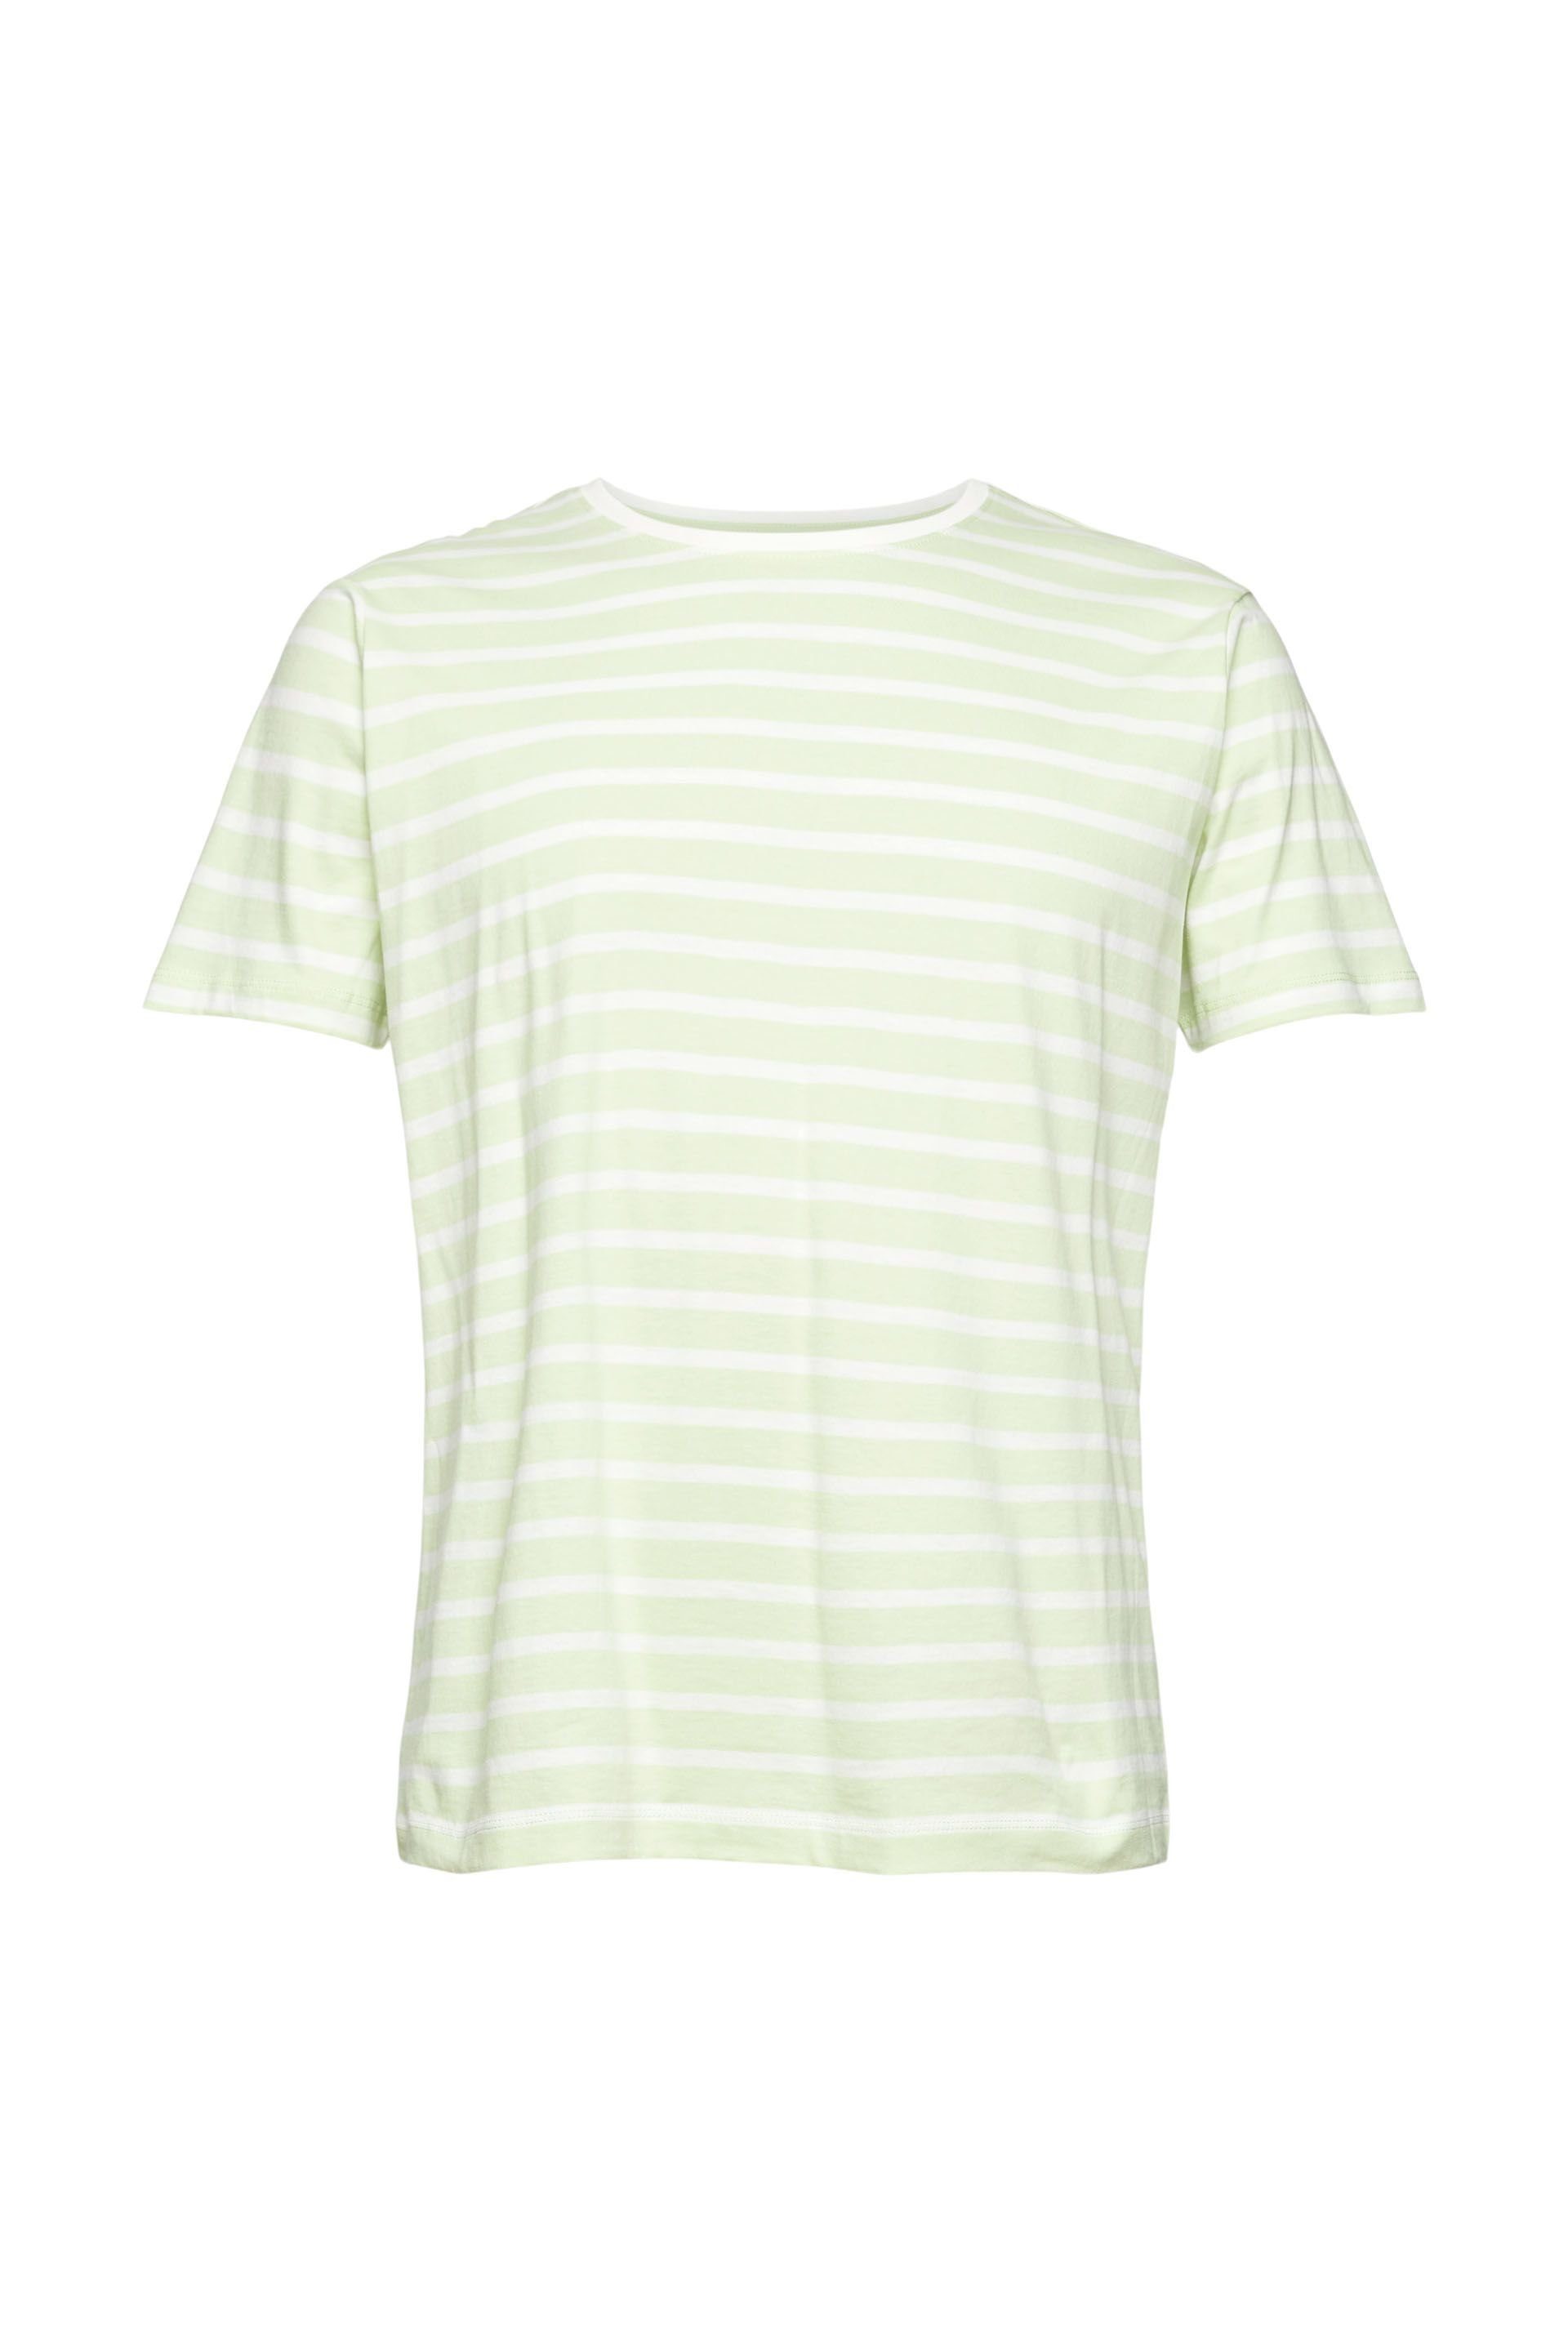 Esprit T-Shirt green light